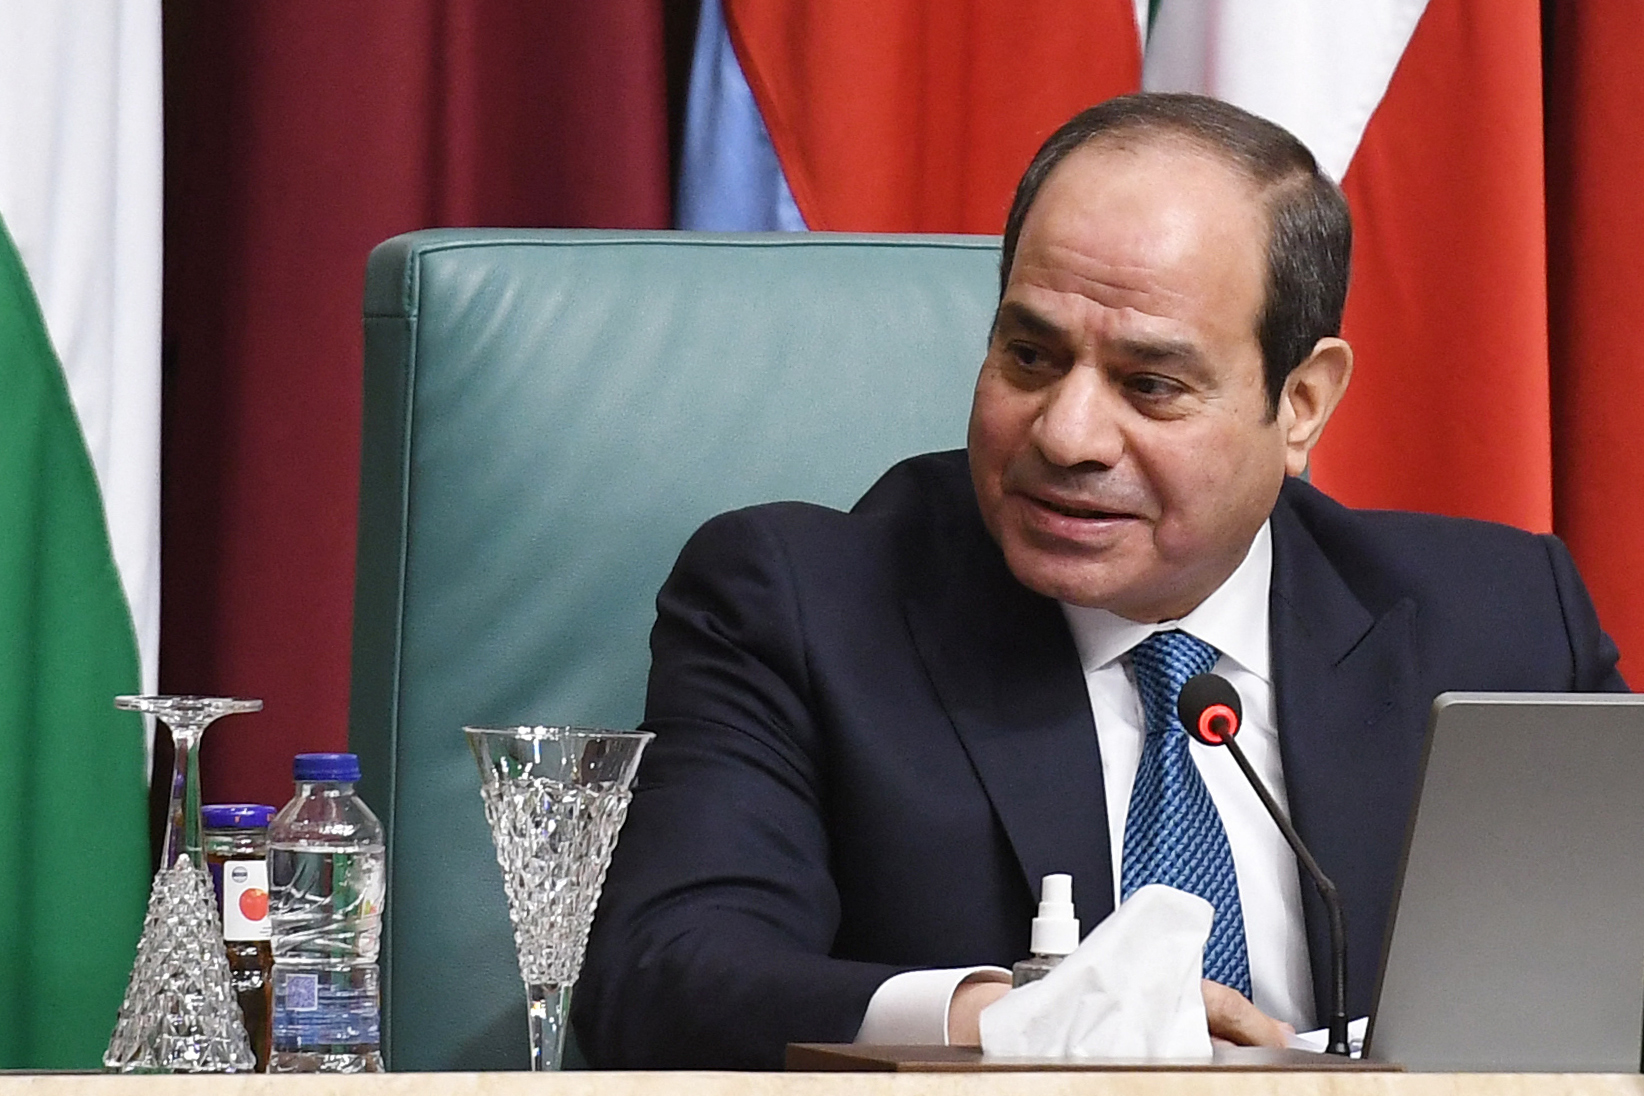 Egyptens president møter russisk utsending og lover å knytte tettere bånd